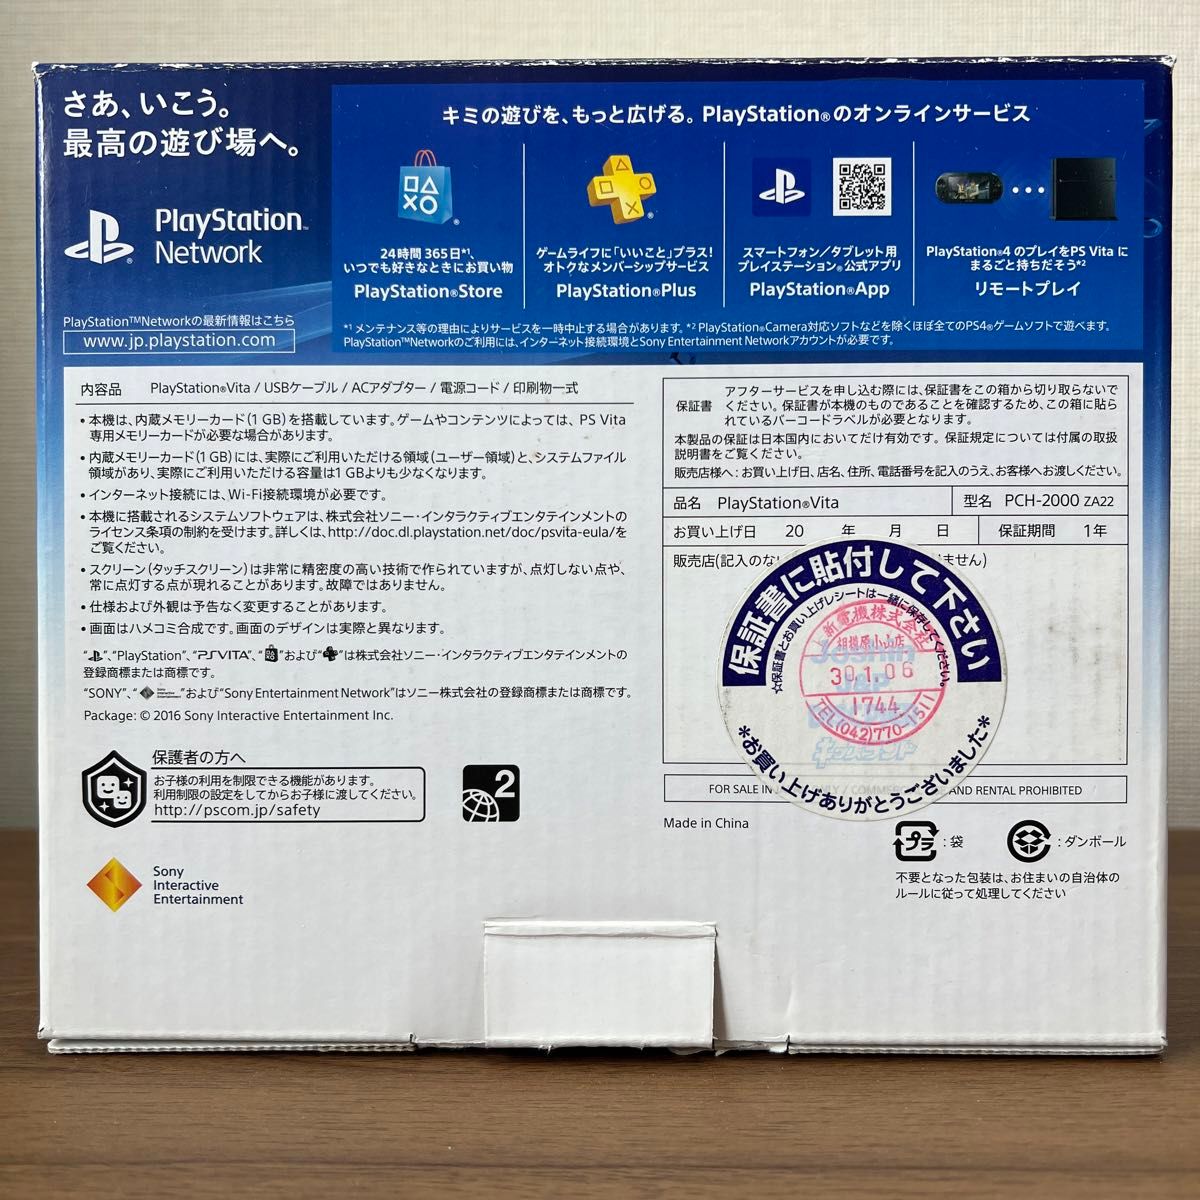 ★本体美品★ PlayStation Vita PCH-2000 ZA22 グレイシャーホワイト